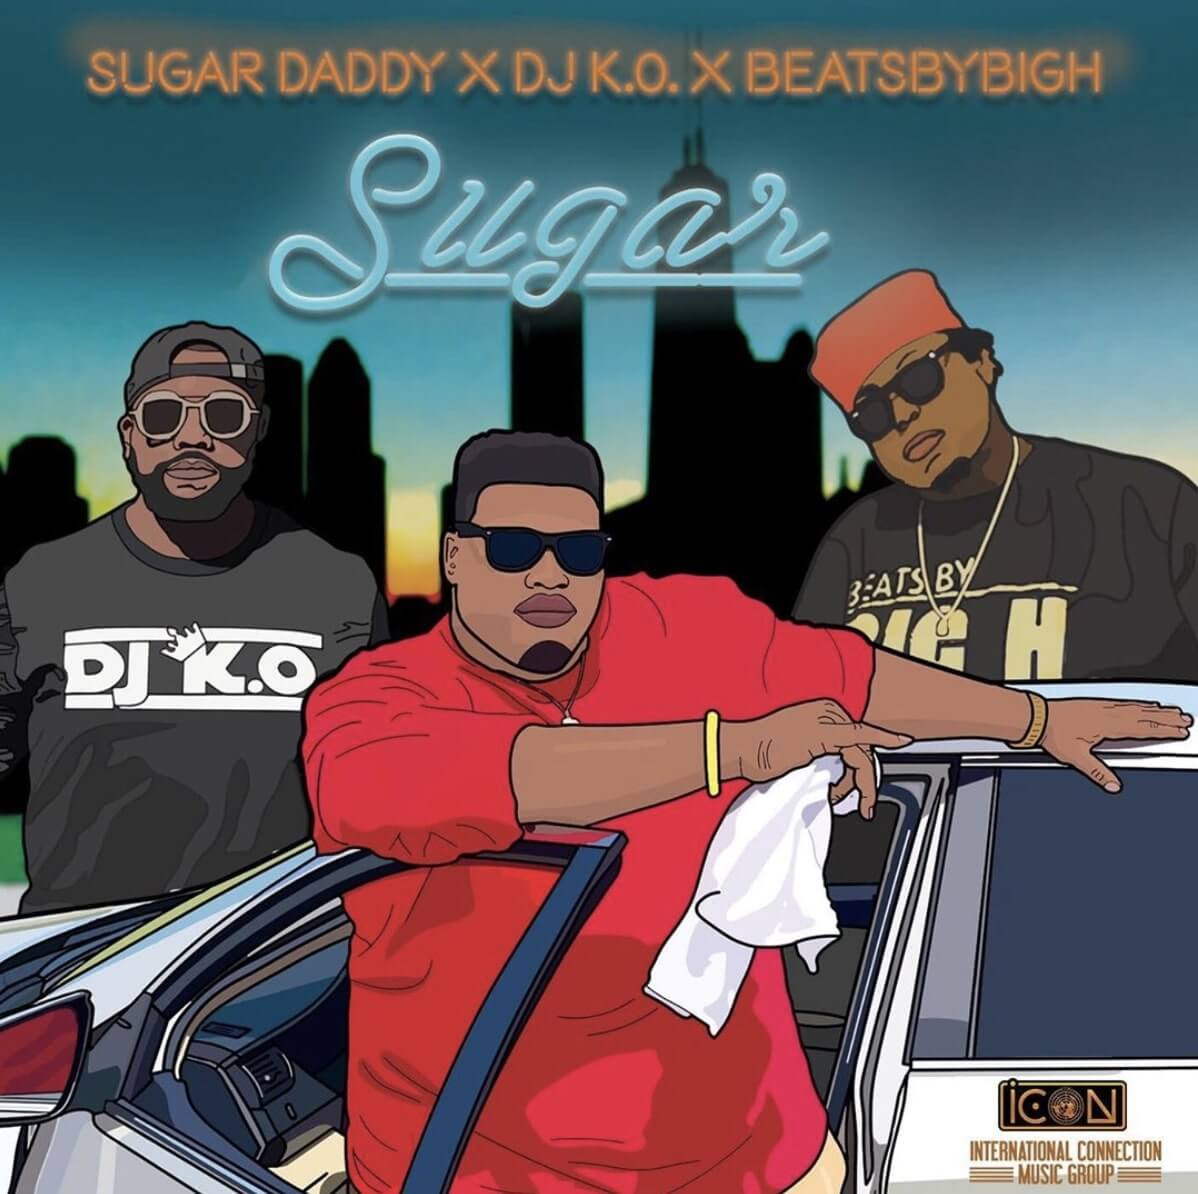 VIDEO: Sugar Daddy - Sugar ft. DJ KO & Big H